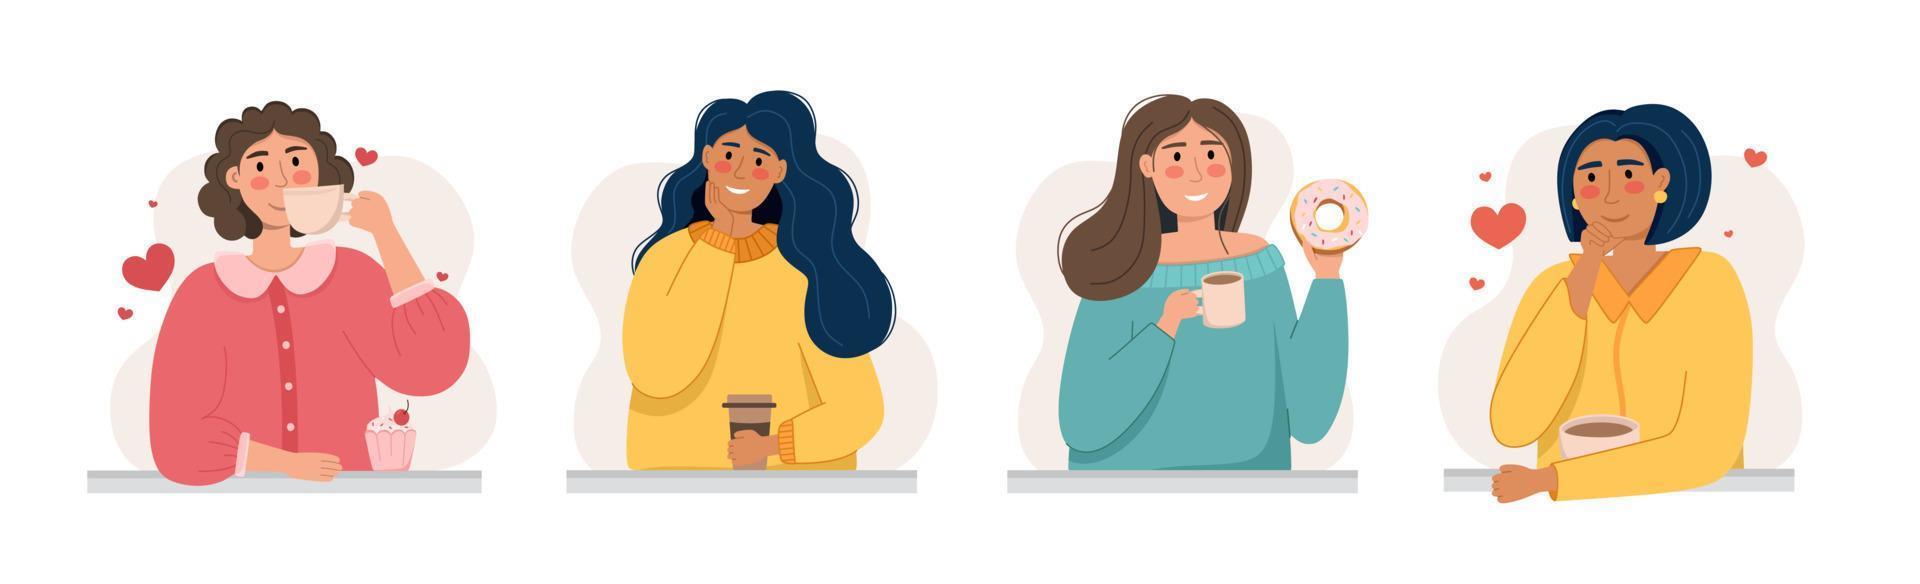 un grupo de chicas con una taza de café es un concepto de cafetería y amantes del café. ilustración vectorial en un estilo plano vector